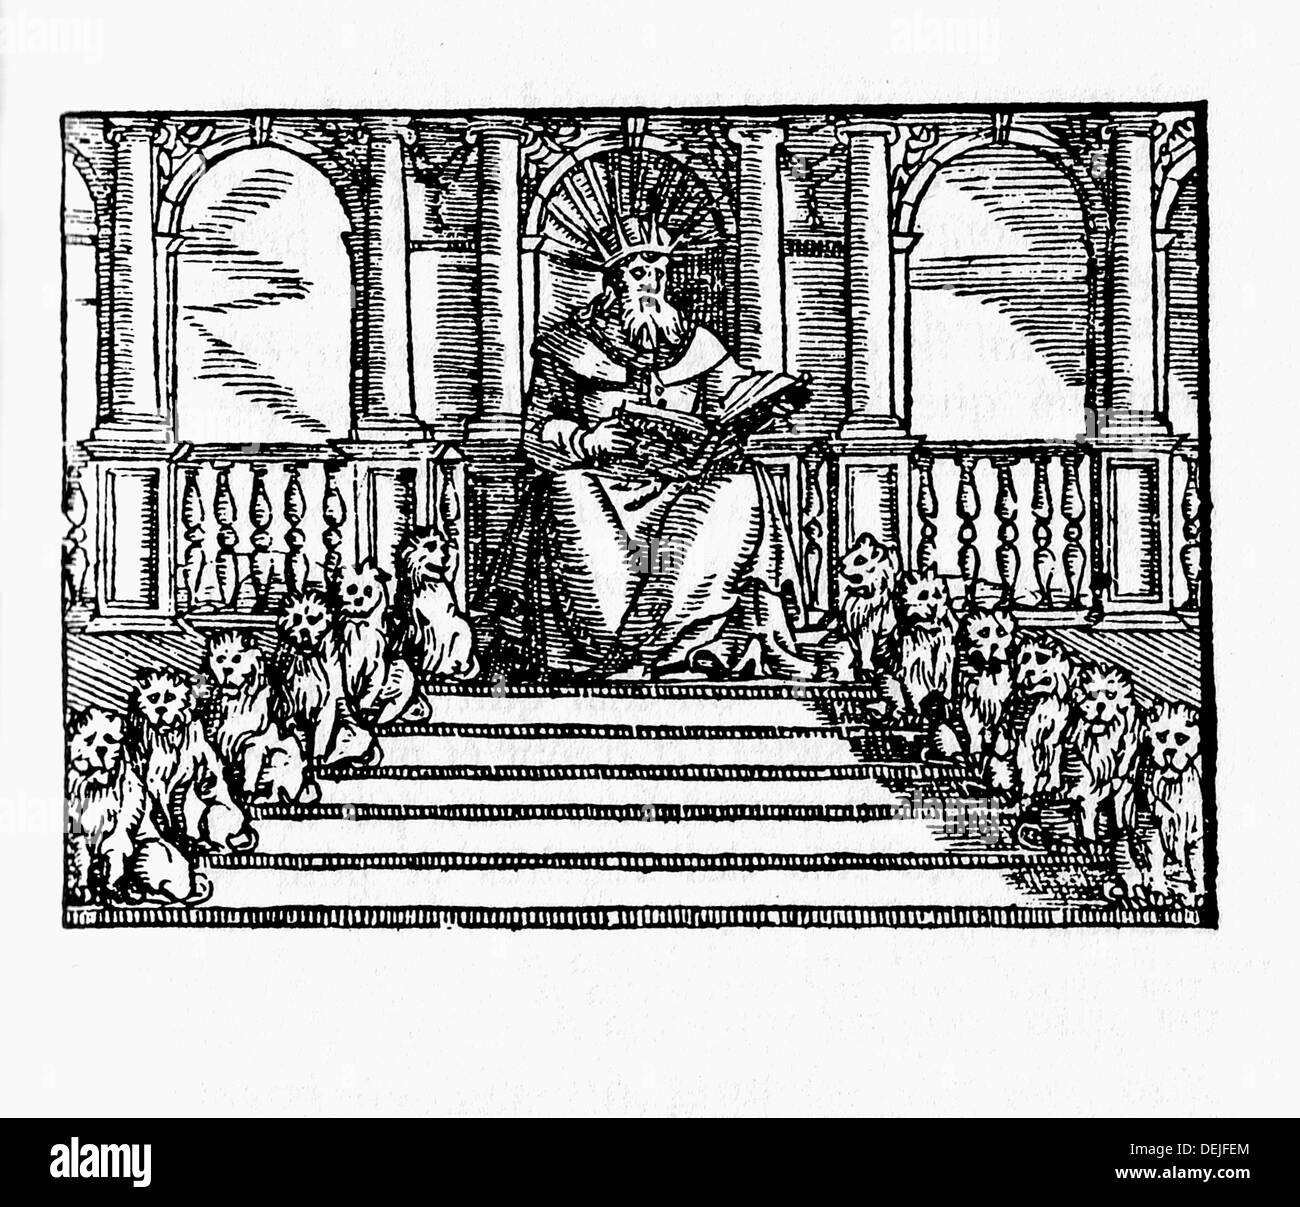 Solomon, Sitted auf dem Elfenbein Thron, liest das Buch des Gesetzes.  Lateinische Bibel. Venedig, 1608 Stockfotografie - Alamy